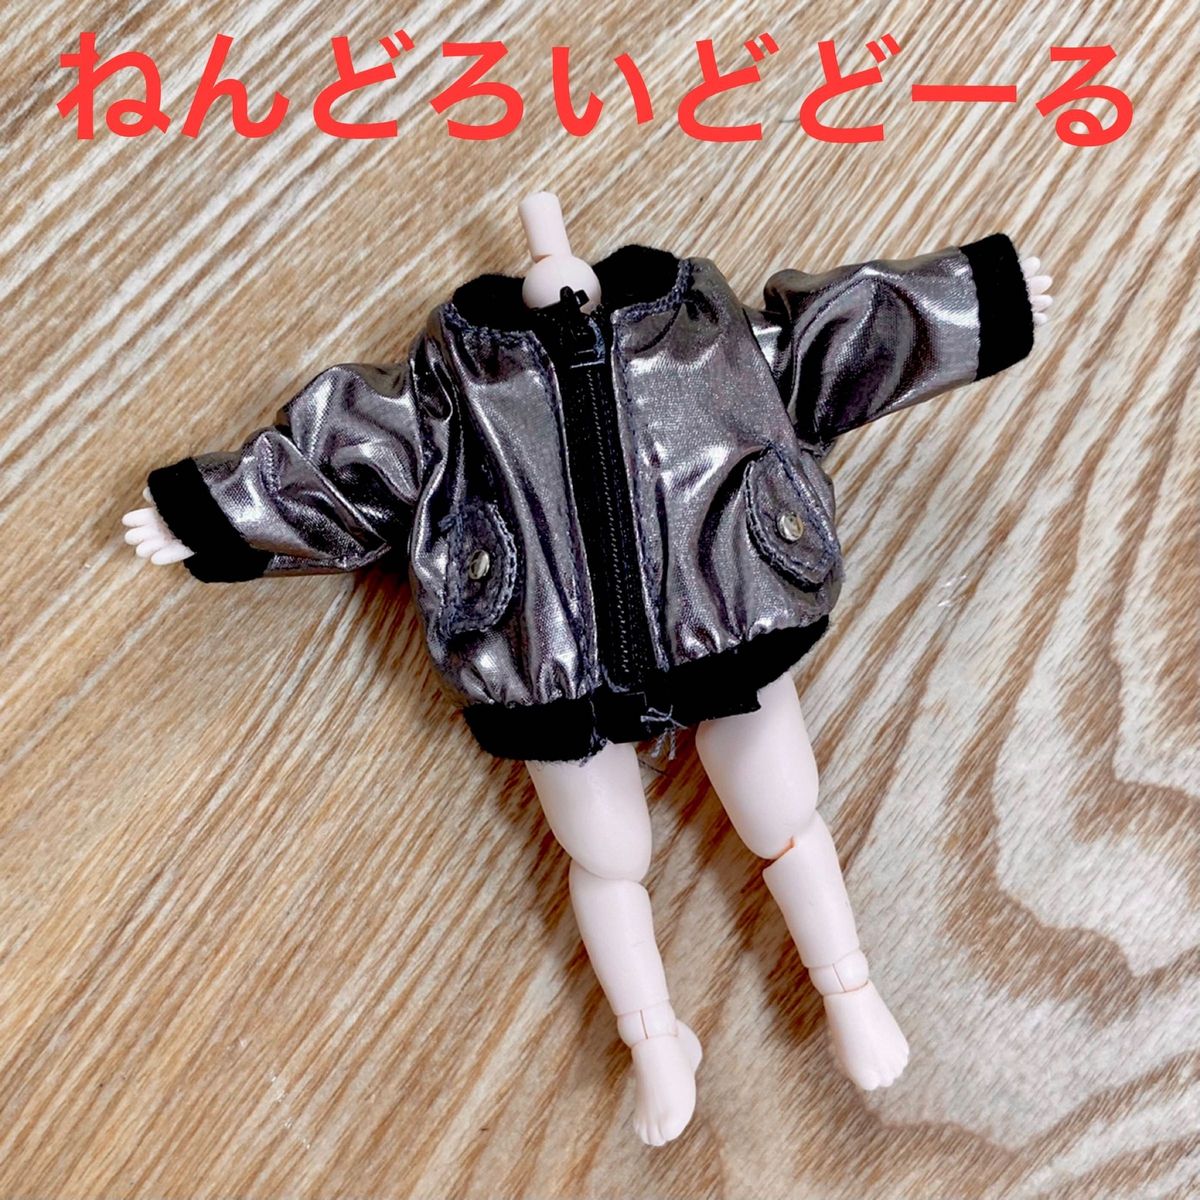 オビツ11 ねんどろいど どーる ジャケット 黒 ブルゾン 人形 服 セリア ドール ピコニーモ P コート 1/12 ブラック